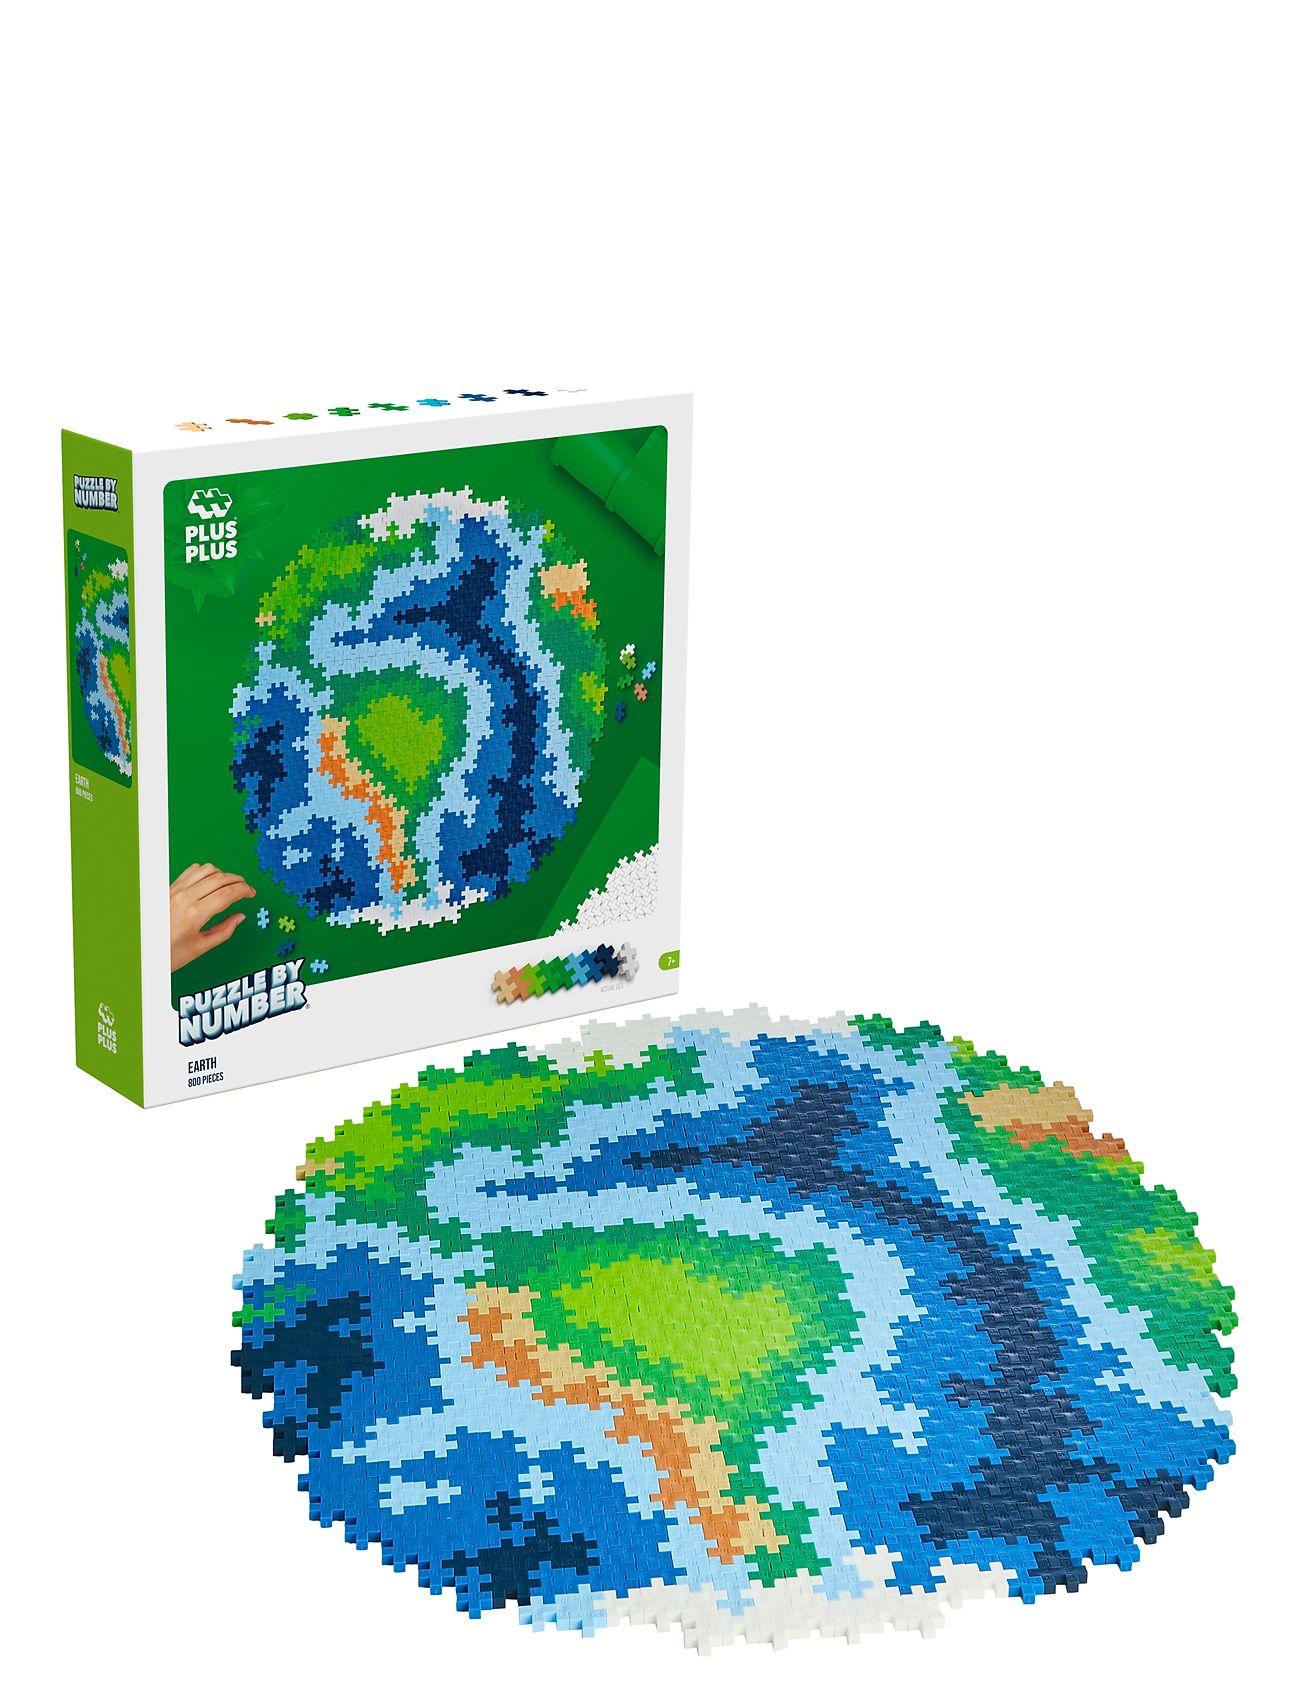 Plus-Plus Puzzle By Number Earth 800Pcs Toys Building Sets & Blocks Building Sets Multi/patterned Plus-Plus